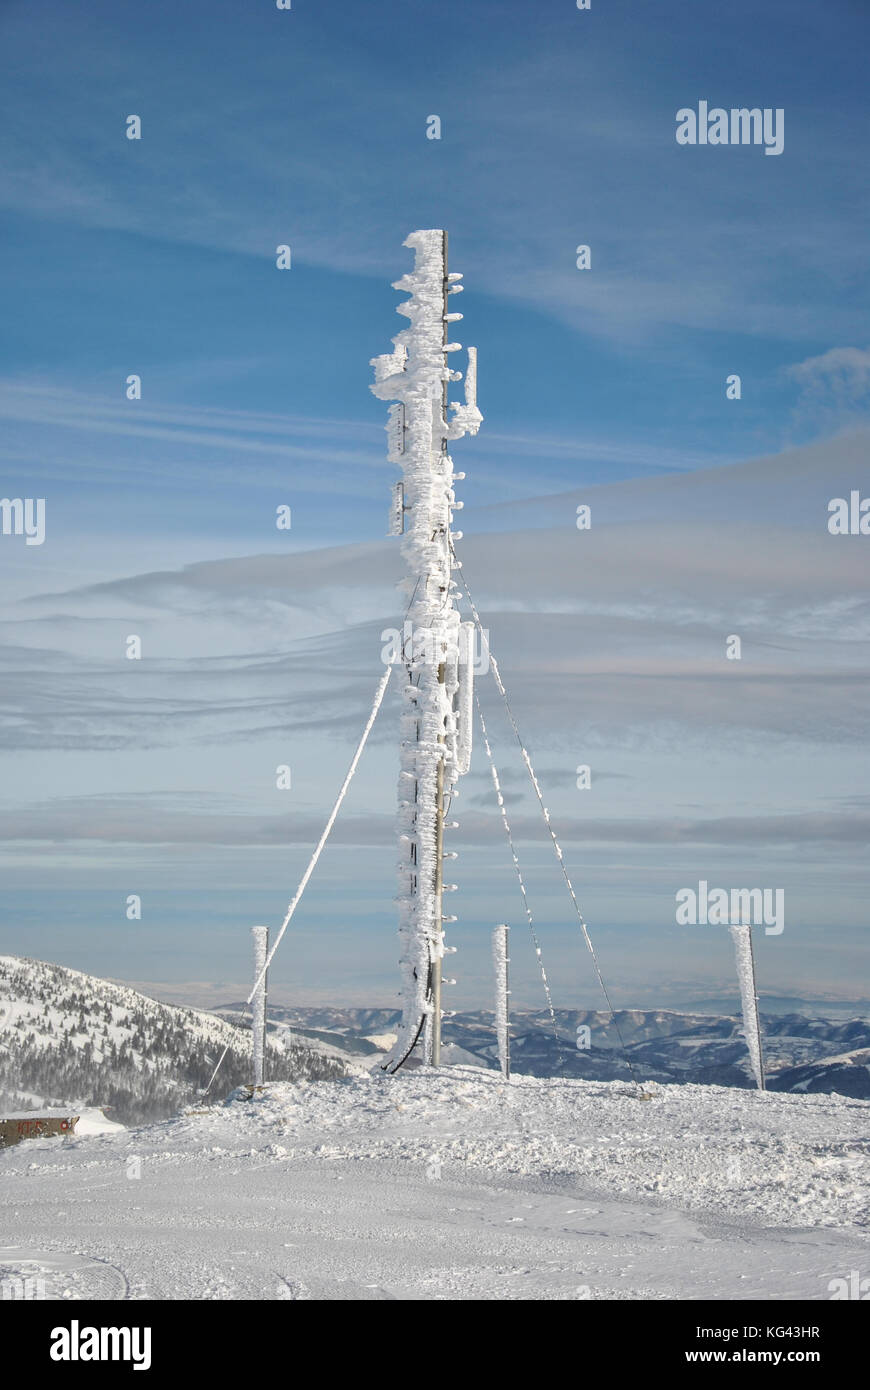 Telekommunikation Antenne auf der Spitze des Berges, gefroren und vollständig durch Schnee und Eiszapfen gegen den blauen Himmel mit einigen hohen Wolken bedeckt Stockfoto